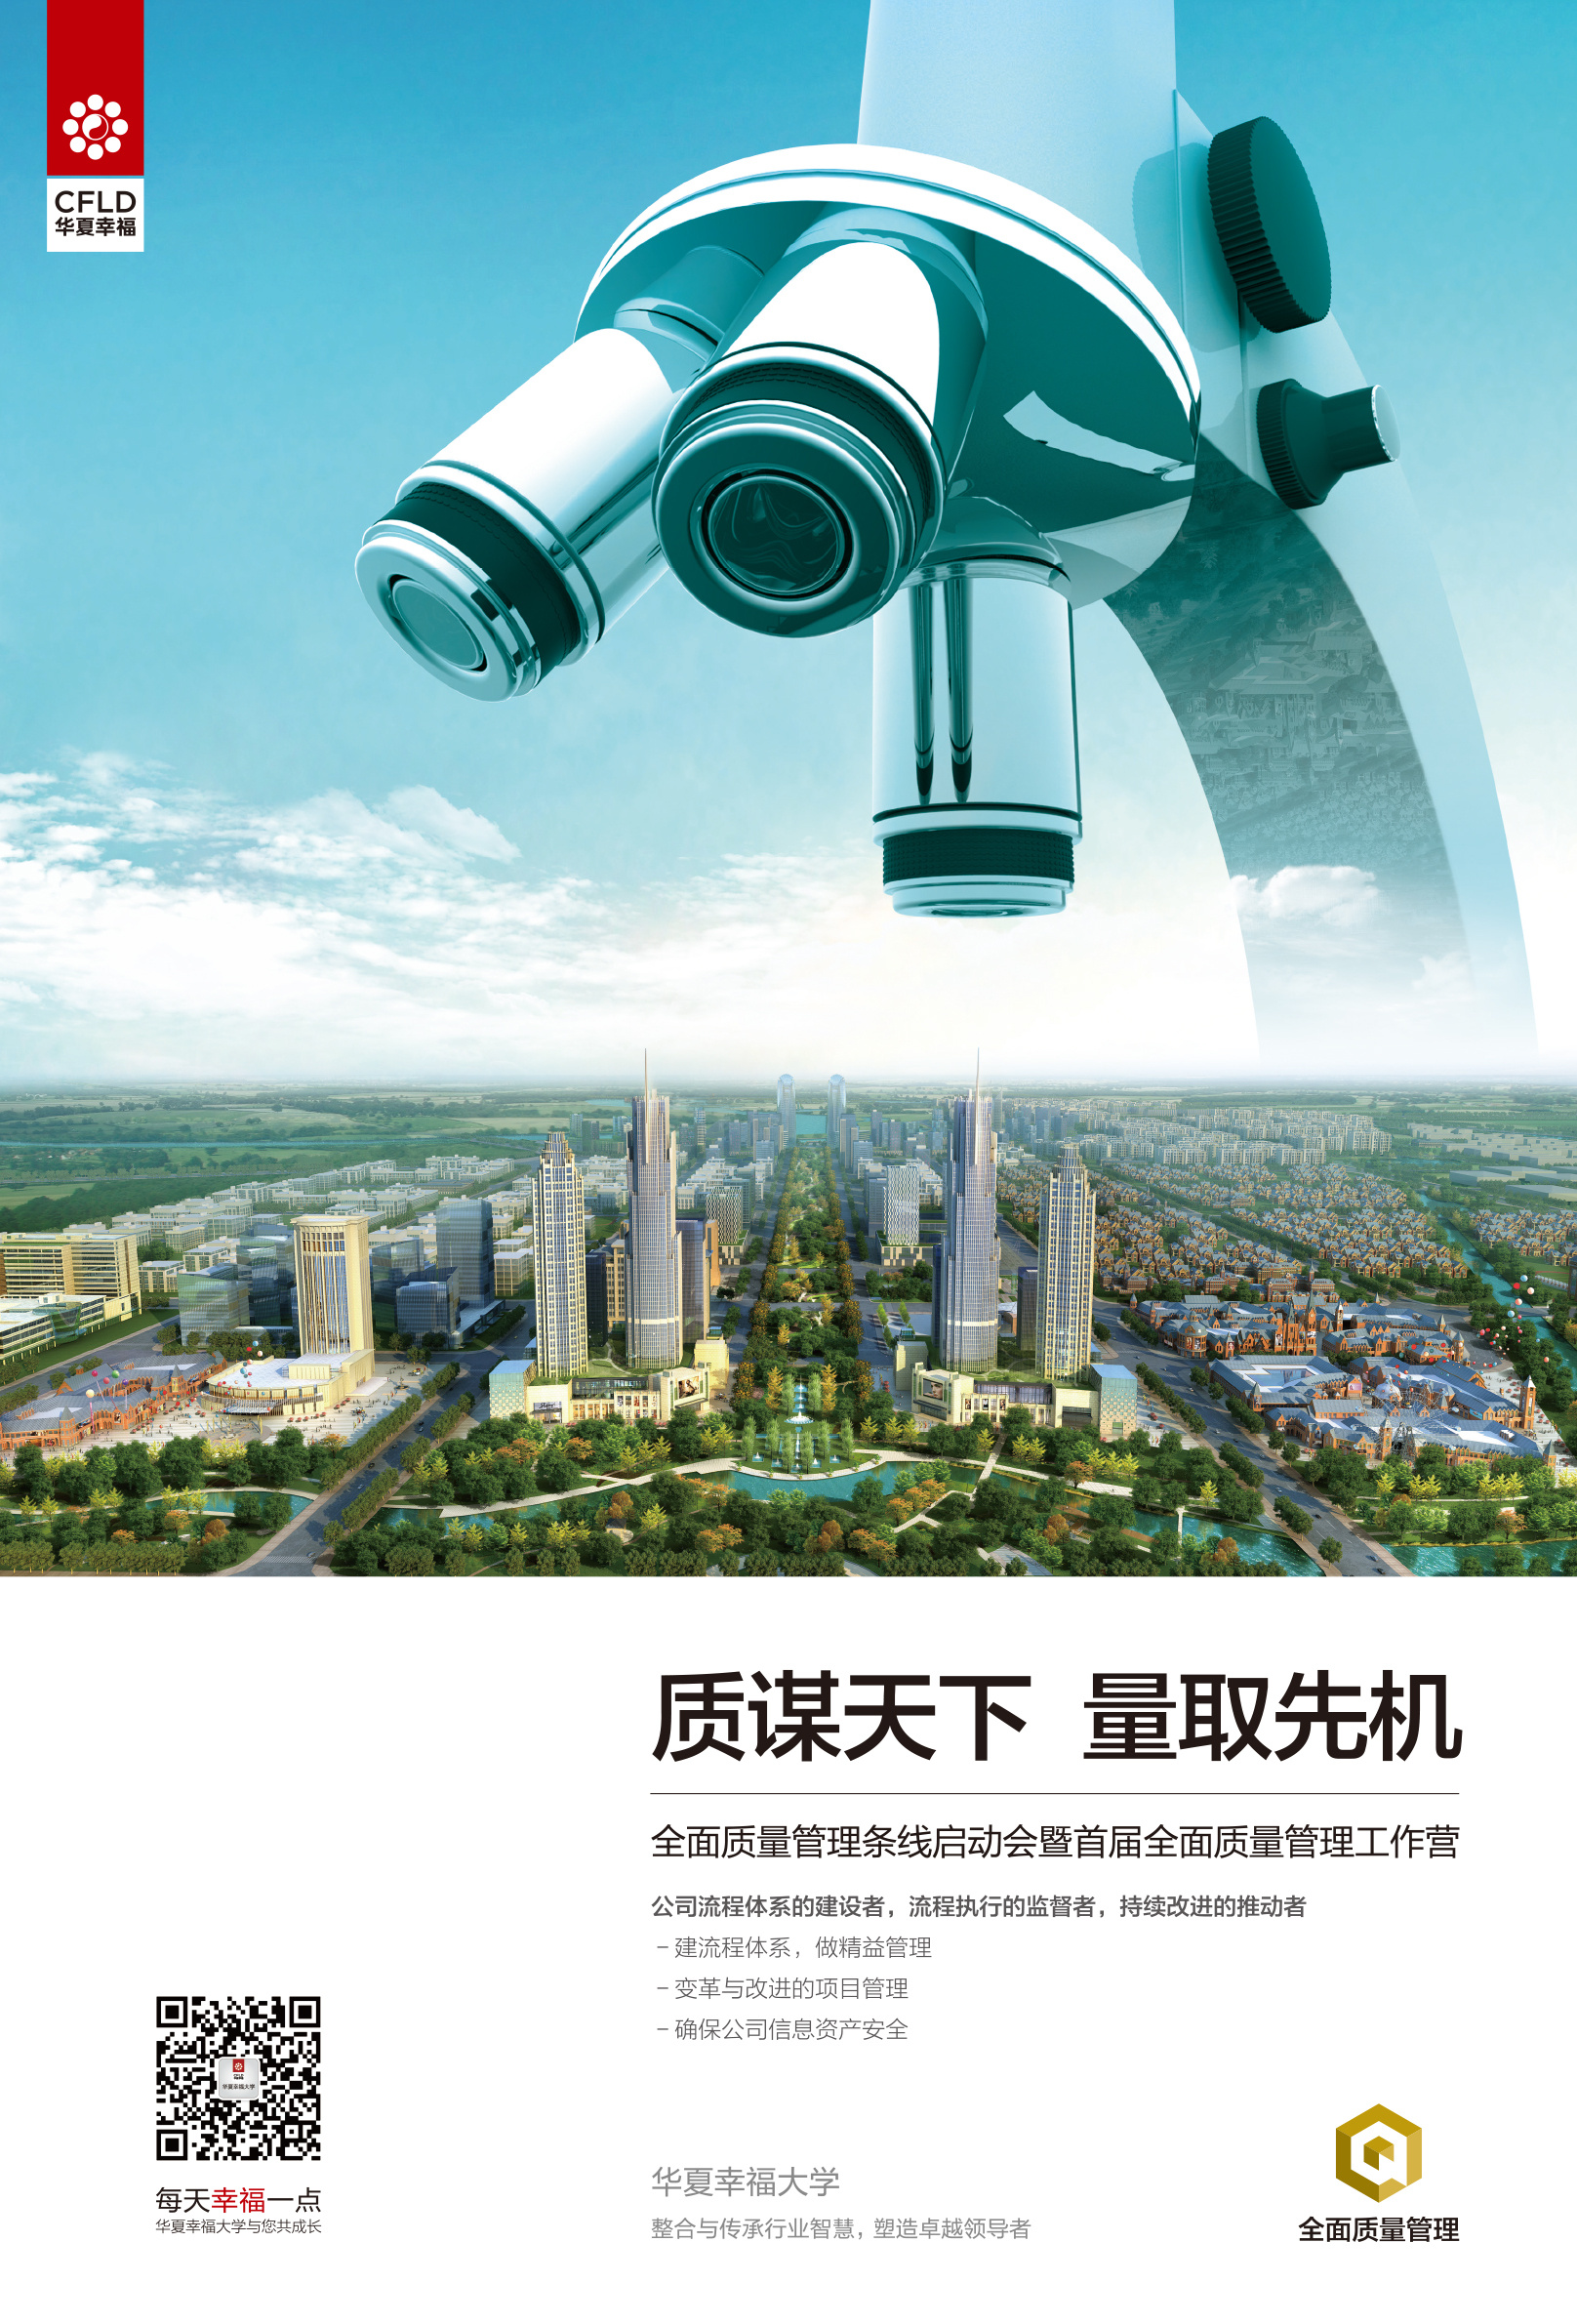 华夏幸福-全面质量管理项目海报系列